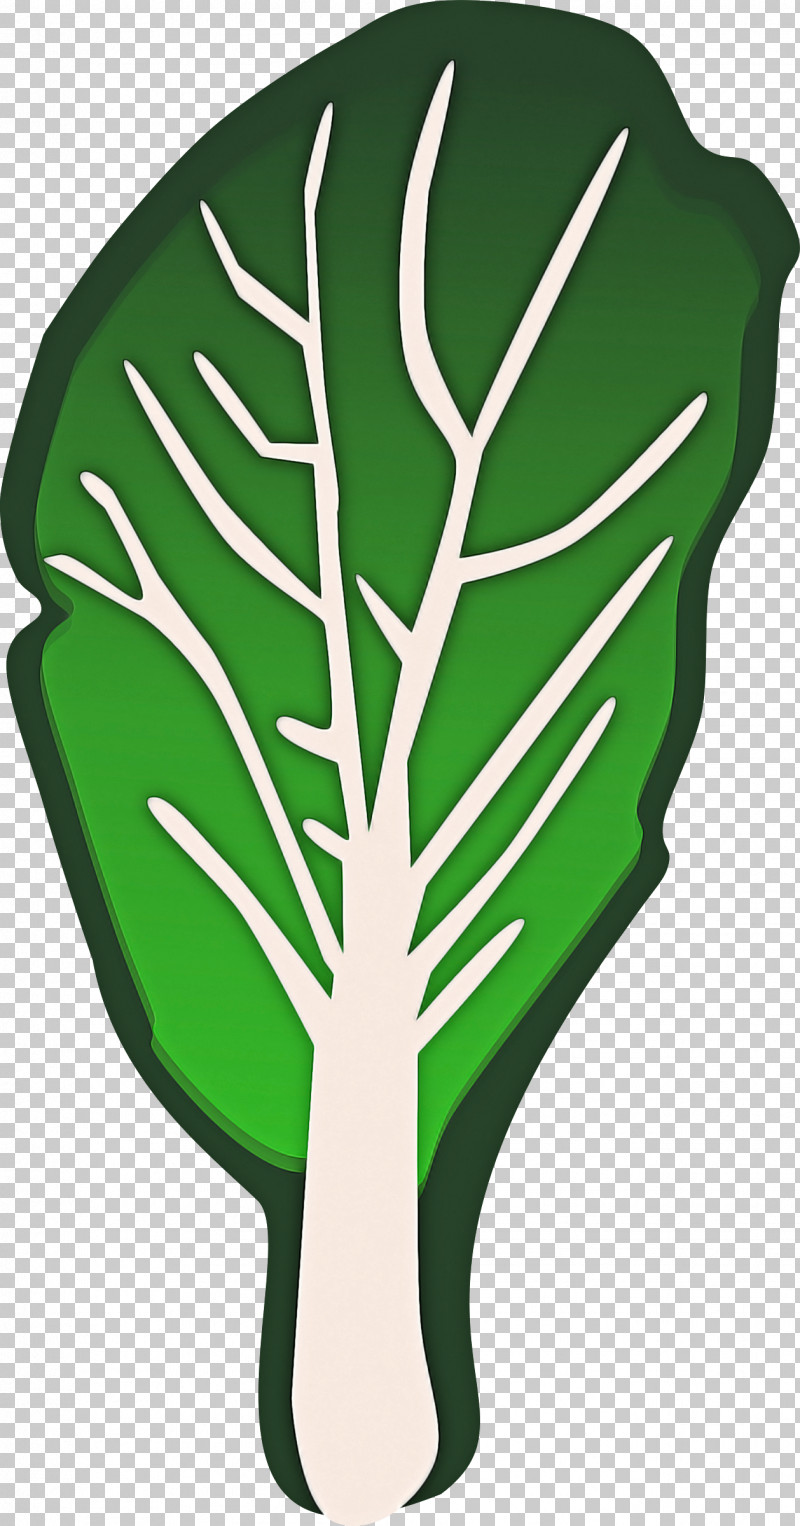 Green Leaf Monstera Deliciosa Plant Leaf Vegetable PNG, Clipart, Green, Leaf, Leaf Vegetable, Monstera Deliciosa, Plant Free PNG Download